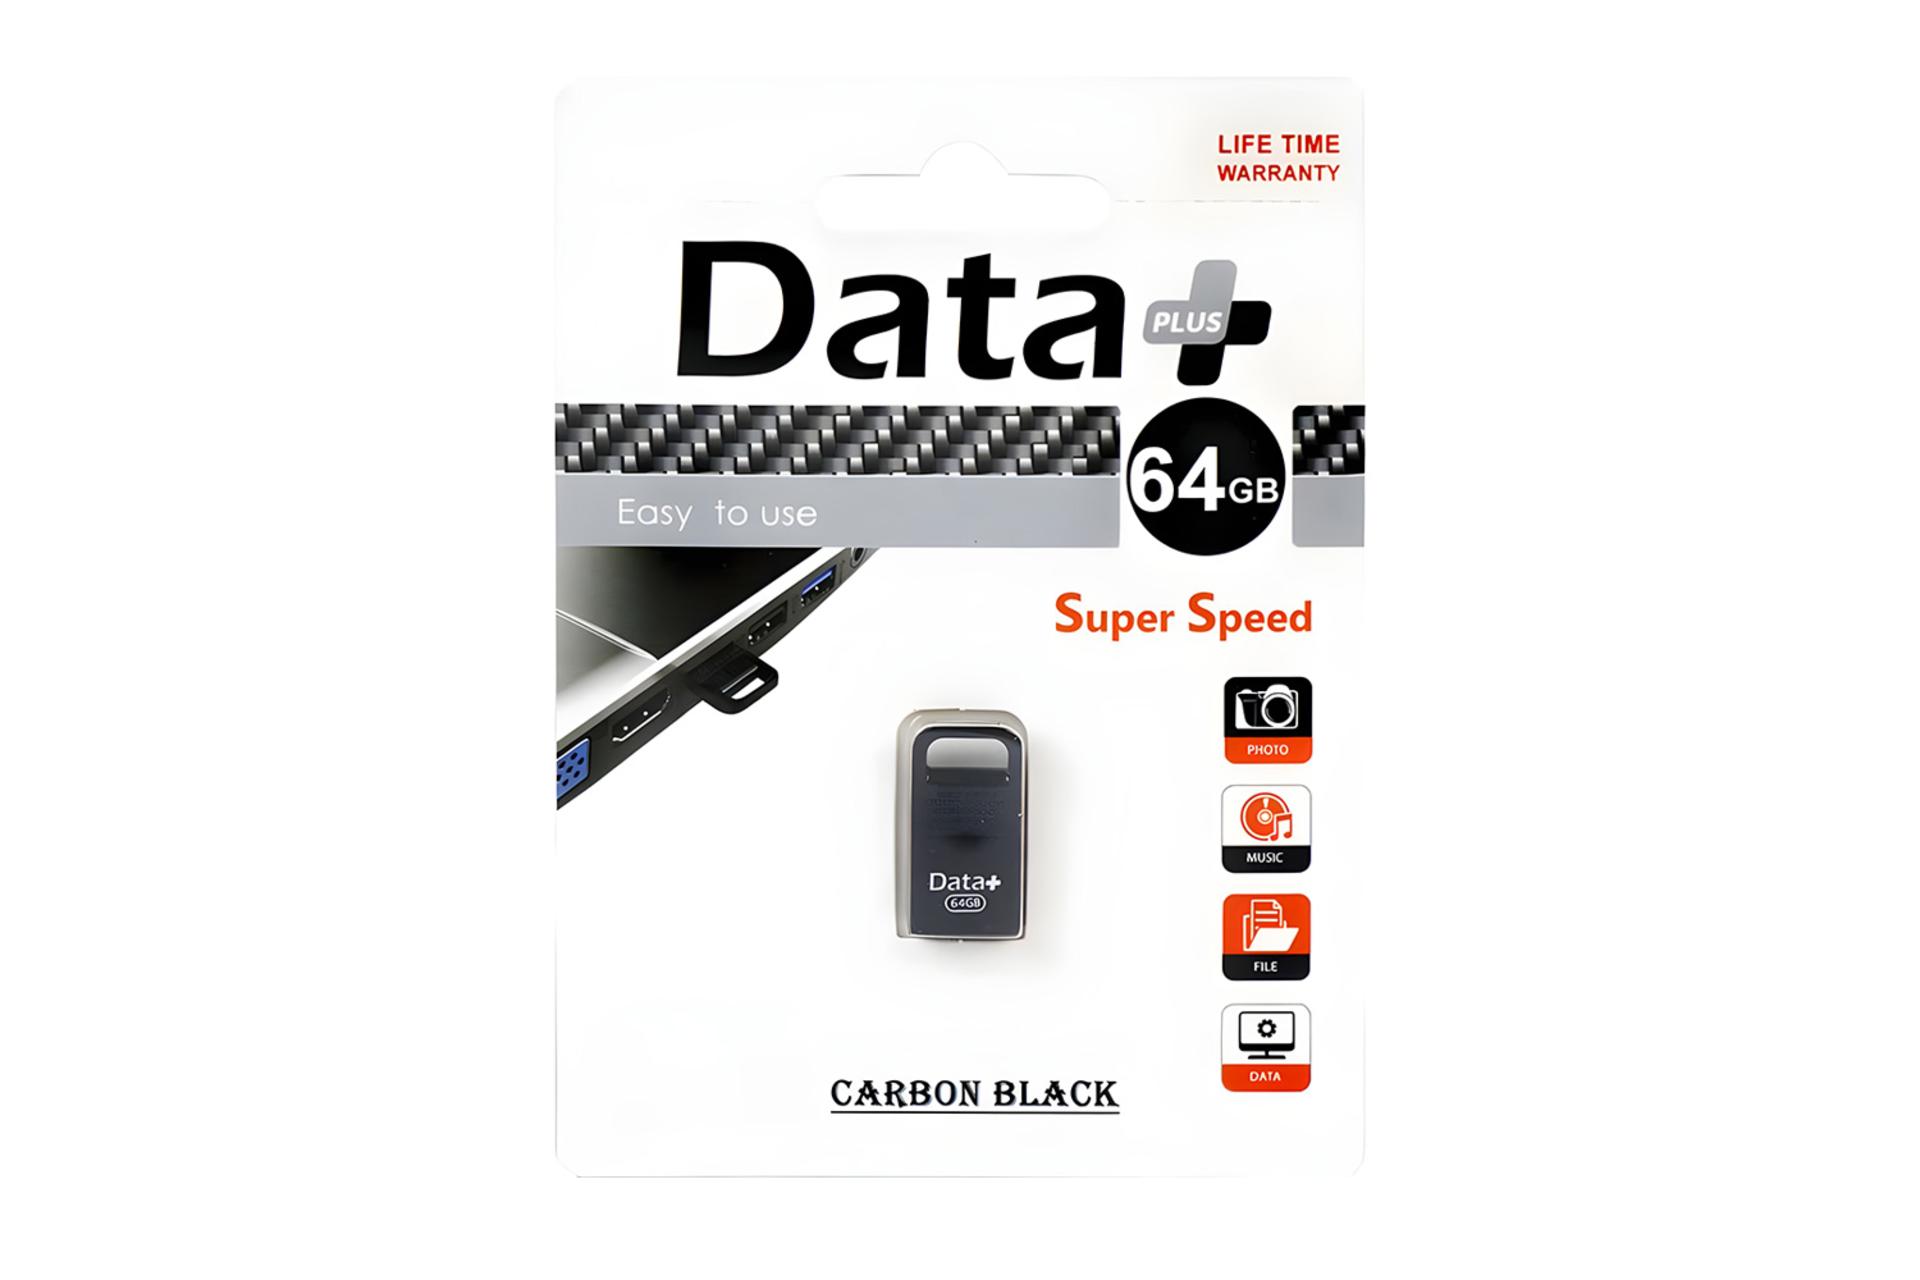 جعبه فلش مموری دیتاپلاس Data+ CARBON BLACK 64GB USB 2.0